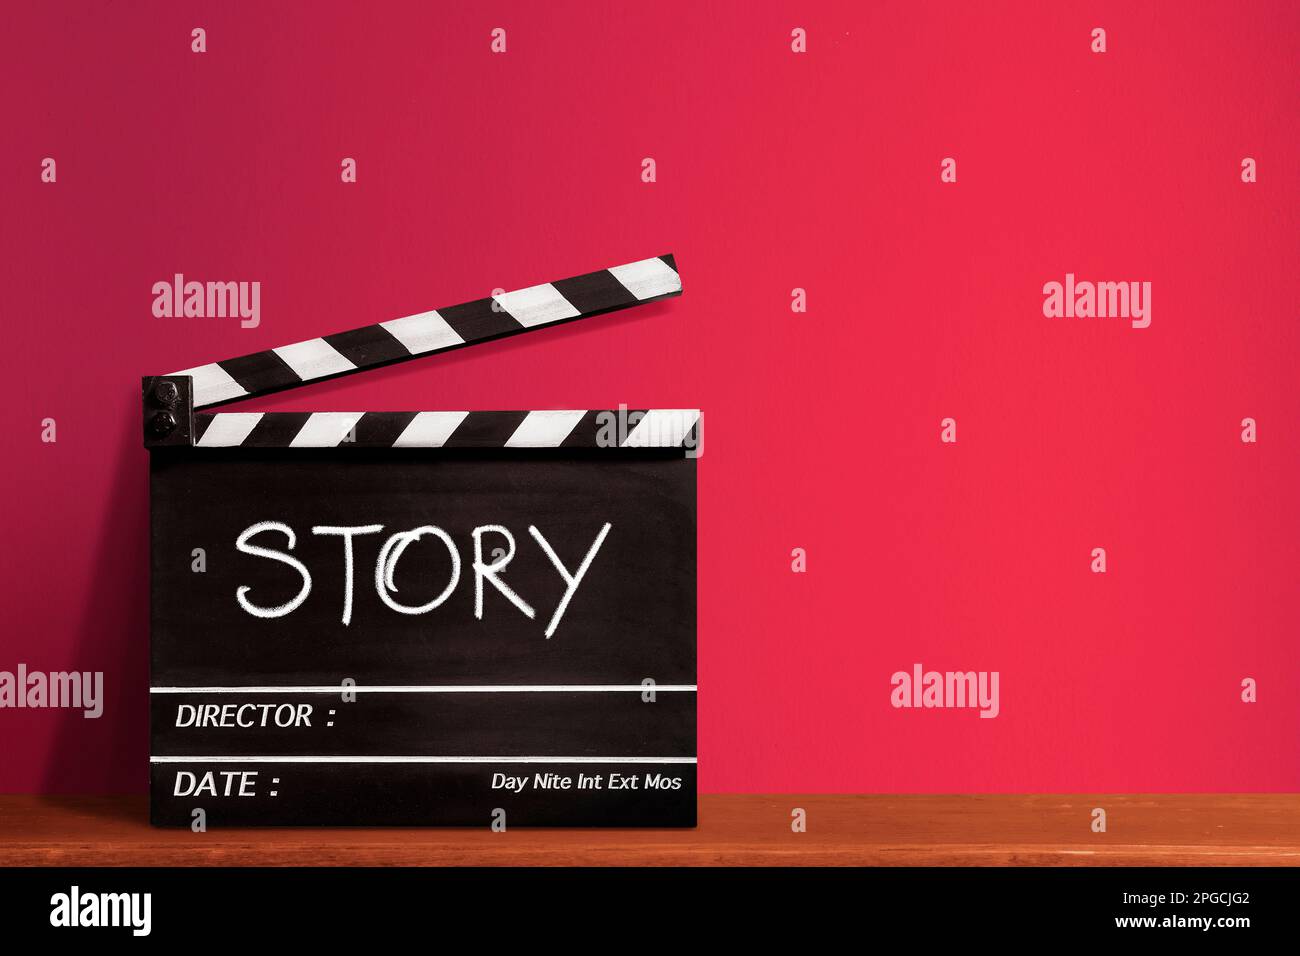 Geschichte, handgeschriebener Texttitel auf Filmschiefer für die Filmindustrie, roter Hintergrund. Stockfoto